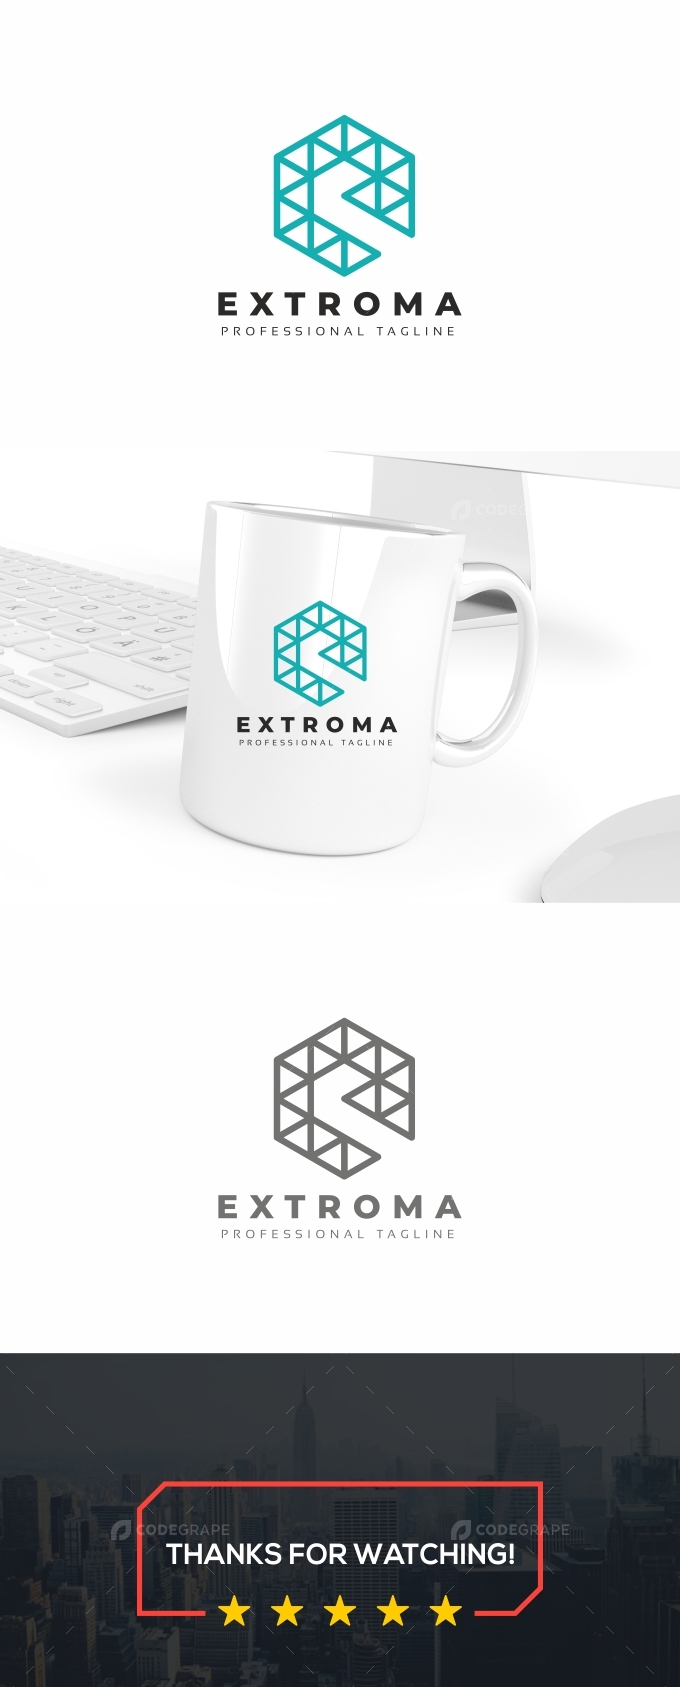 E Letter Hexagon Logo